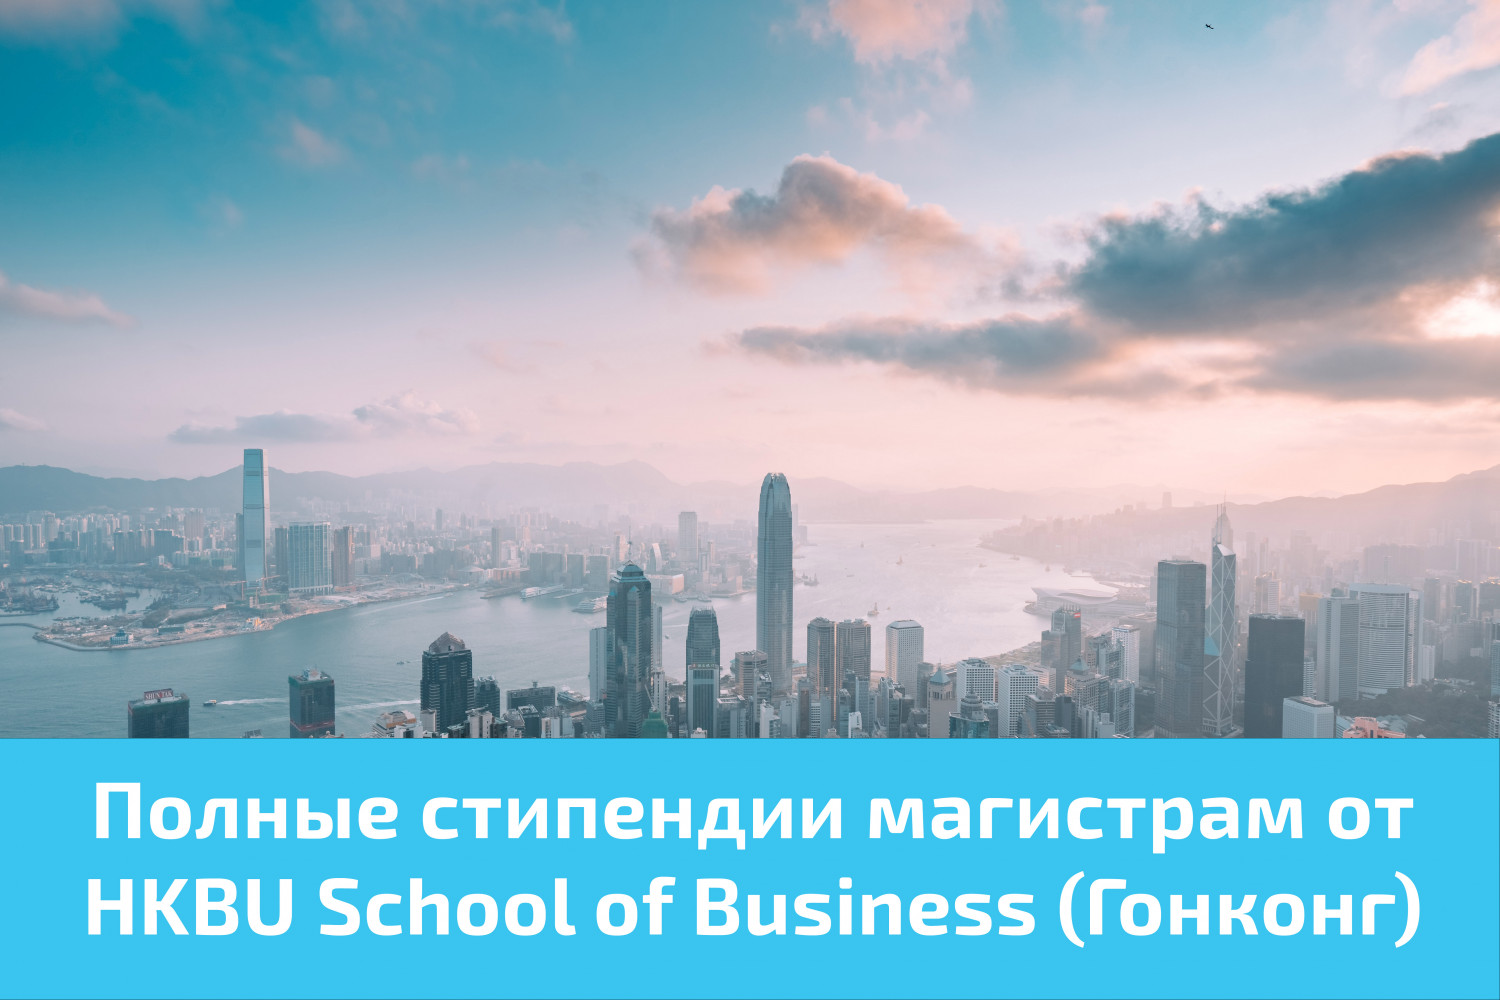 Полные стипендии магистрам от HKBU School of Business